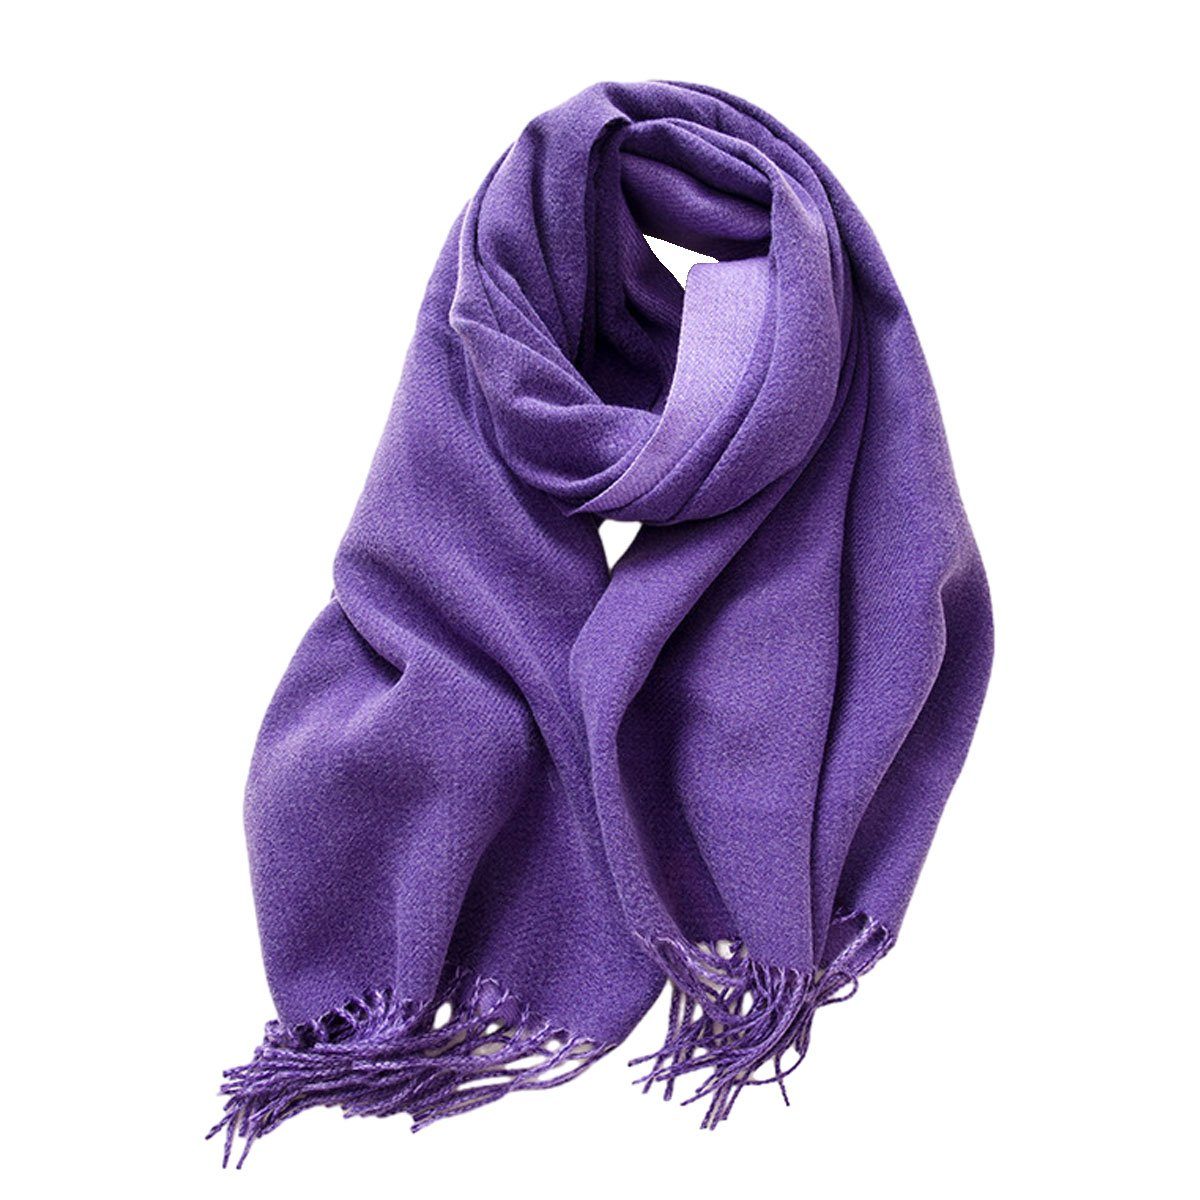 Jormftte Modeschal Damen Schal Stola Für abendkleid Winter Schals für Frauen Warme Schal Violett